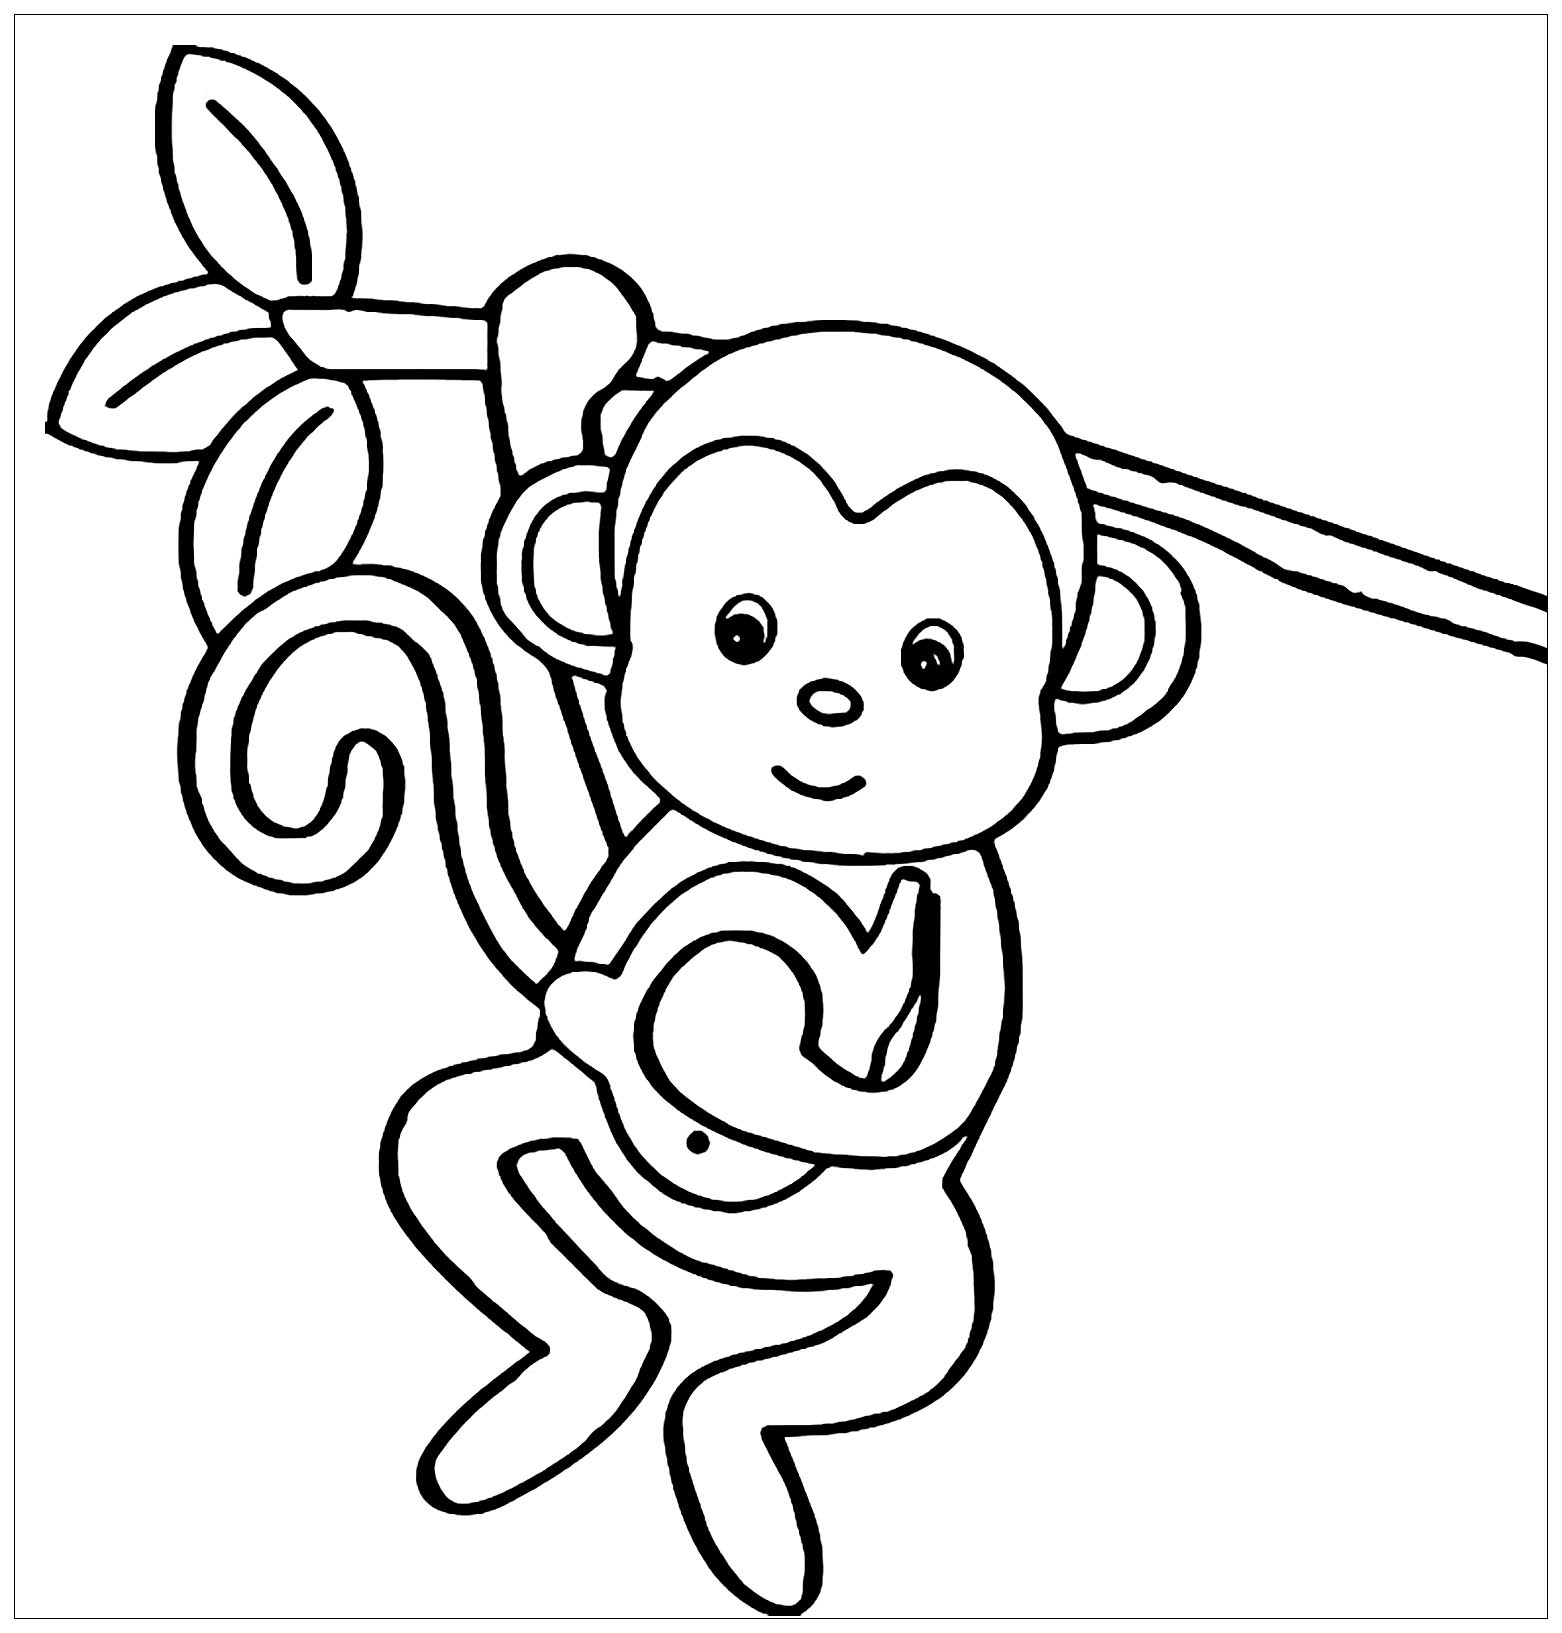 Divertidas páginas de monos para imprimir y colorear